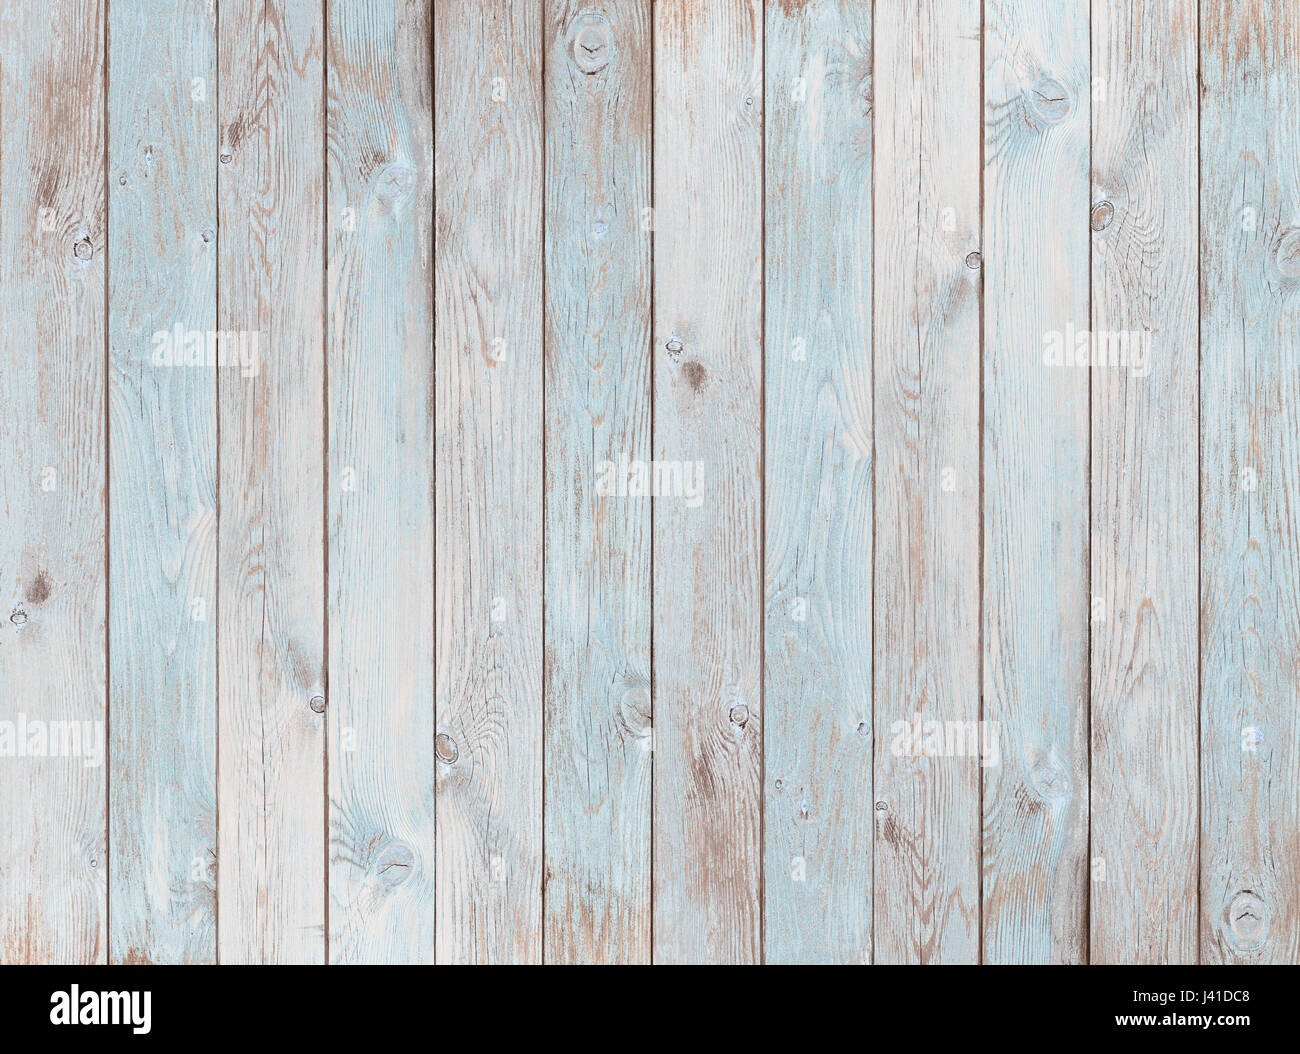 Los tablones de madera azul pálido de fondo o textura Foto de stock